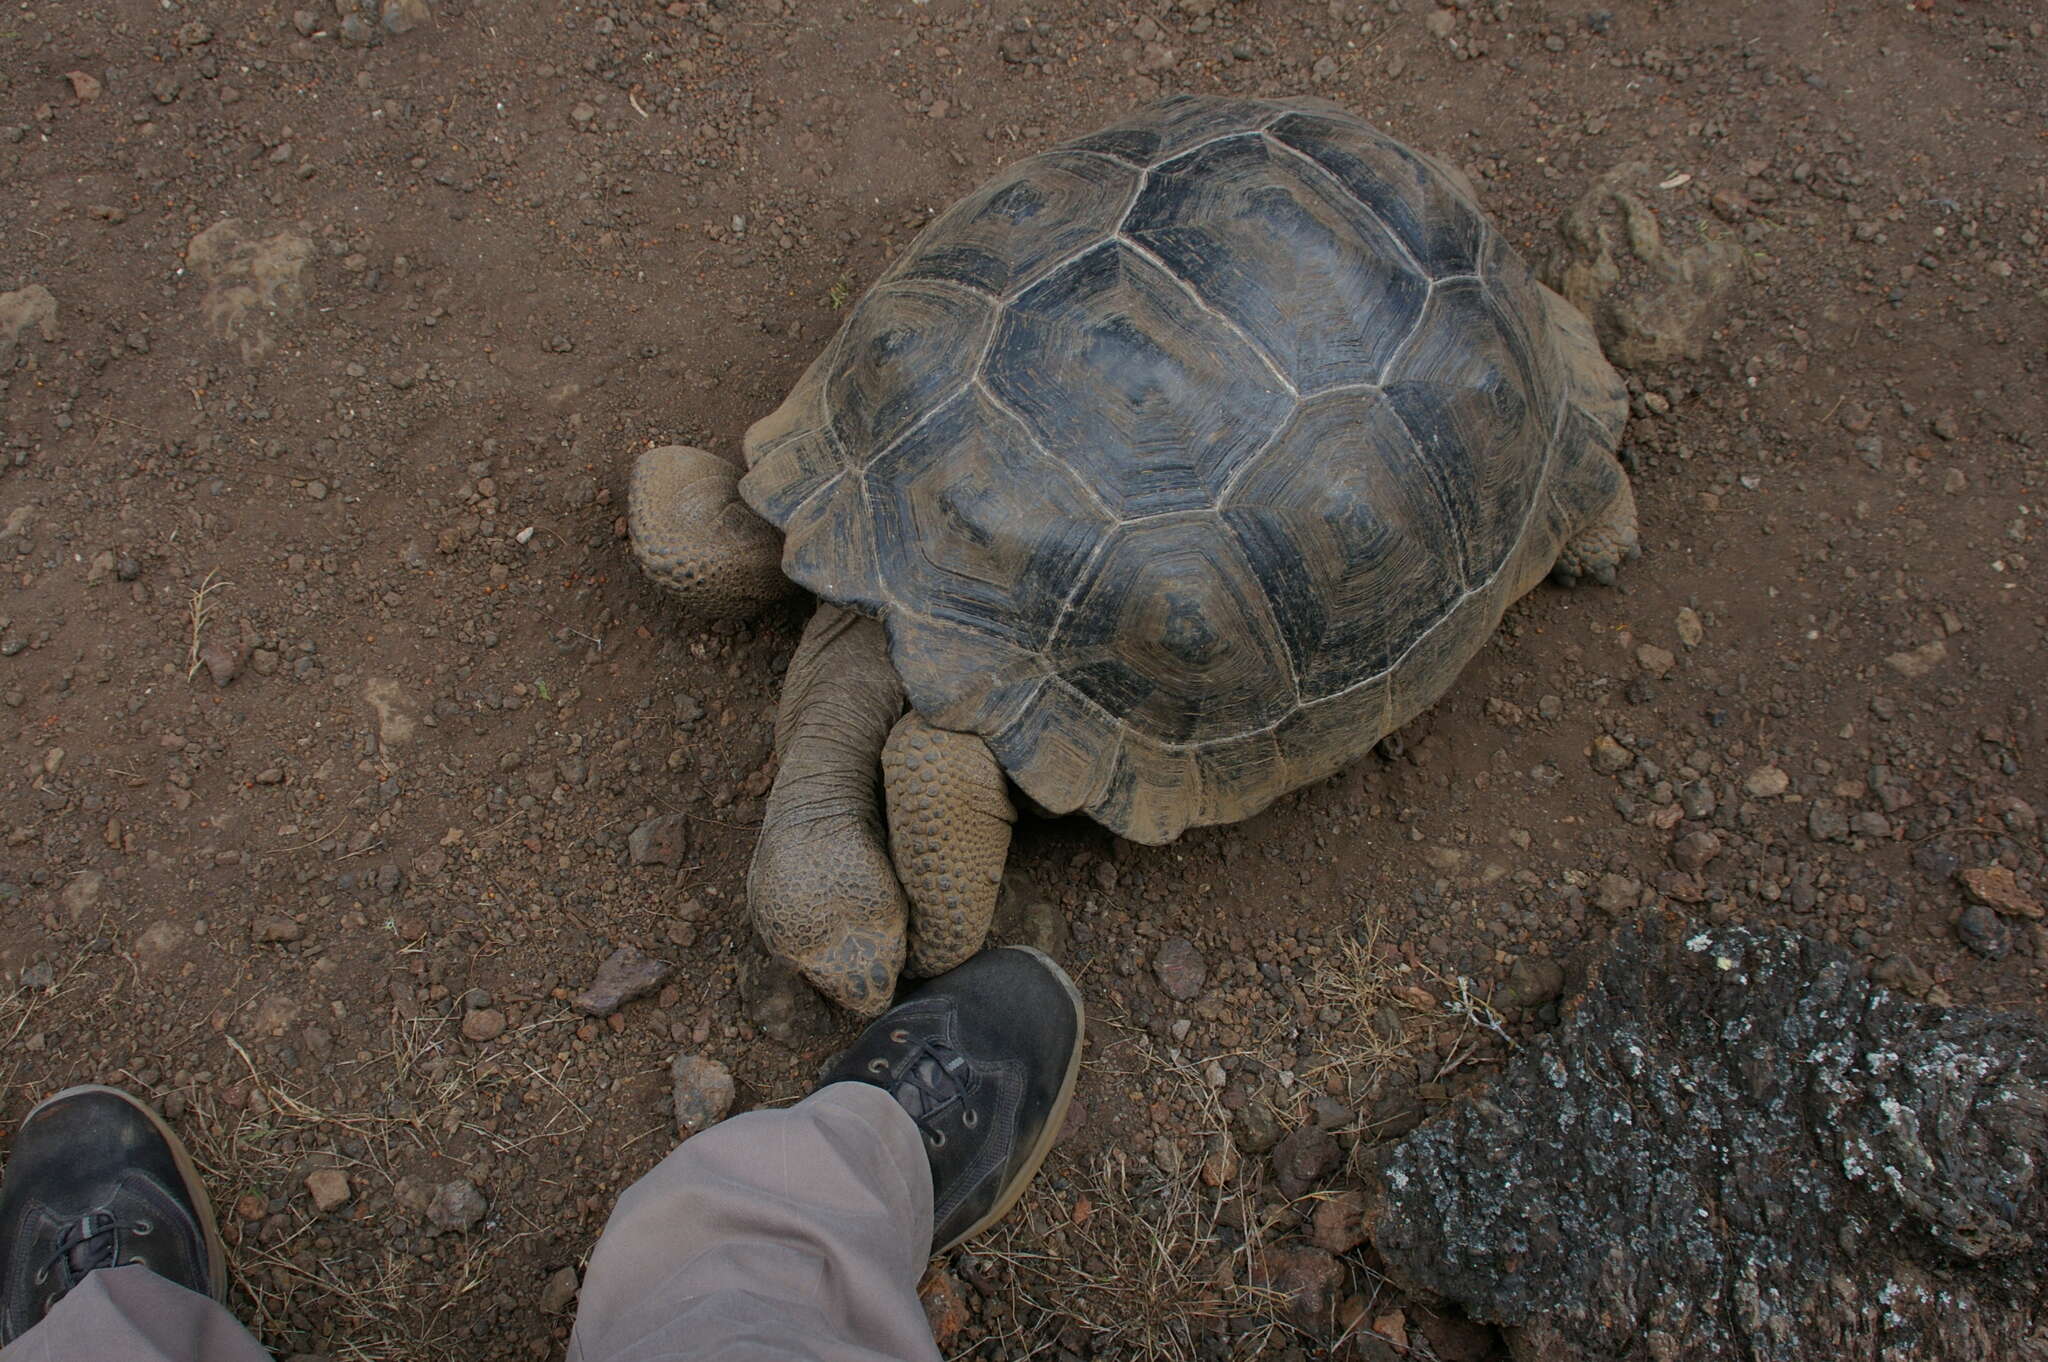 Image of Sierra Negra giant tortoise